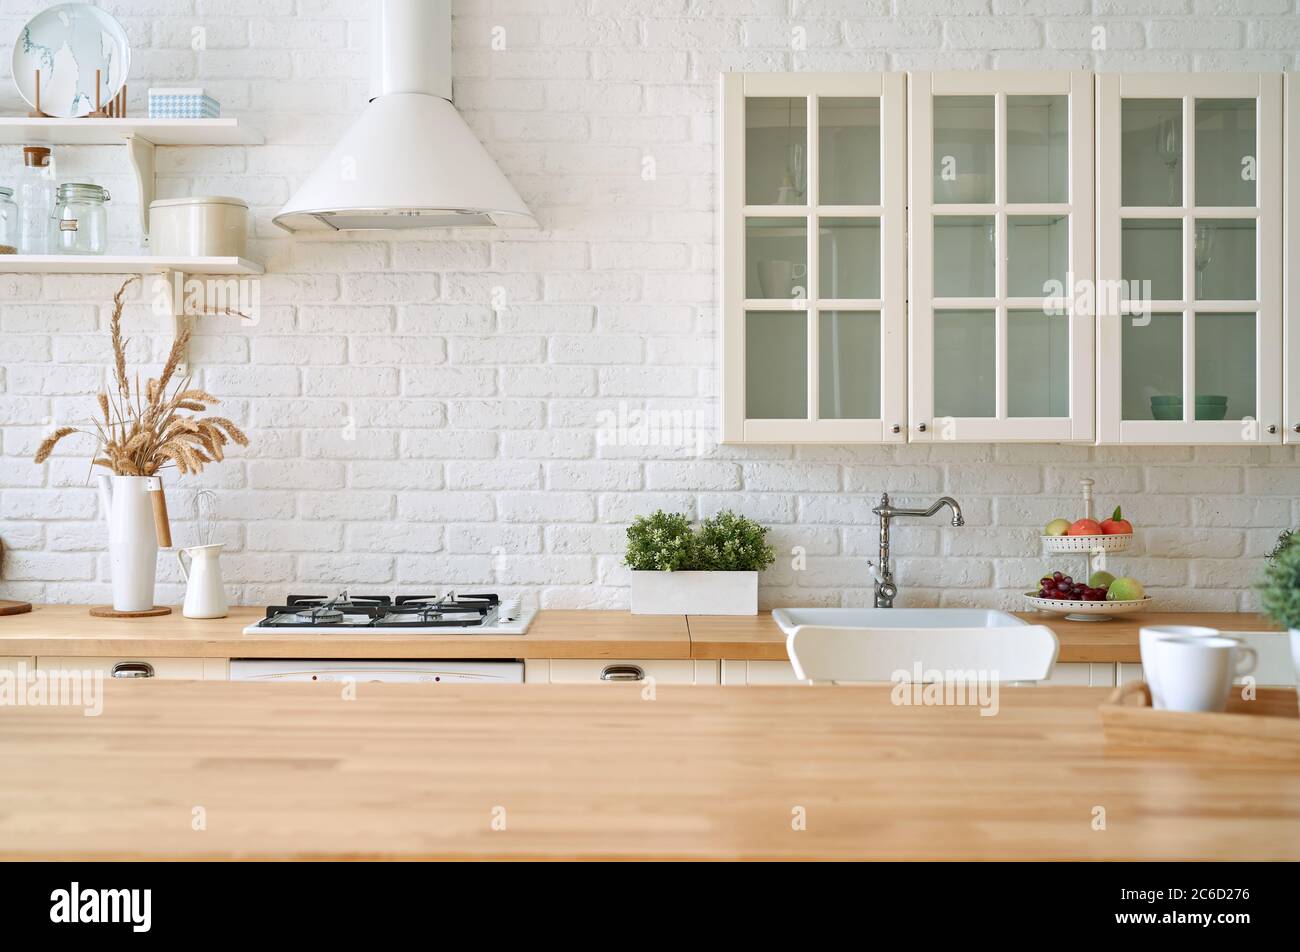 Bàn gỗ nhà bếp và nền tảng nghệ thuật mờ nội thất nhà bếp sẽ đem đến cho bạn một trải nghiệm vô cùng ấn tượng. Những hình ảnh này sẽ giúp bạn tạo ra một không gian nấu ăn đẹp mắt và sang trọng. Hãy xem và tận hưởng sự khác biệt ngay bây giờ!